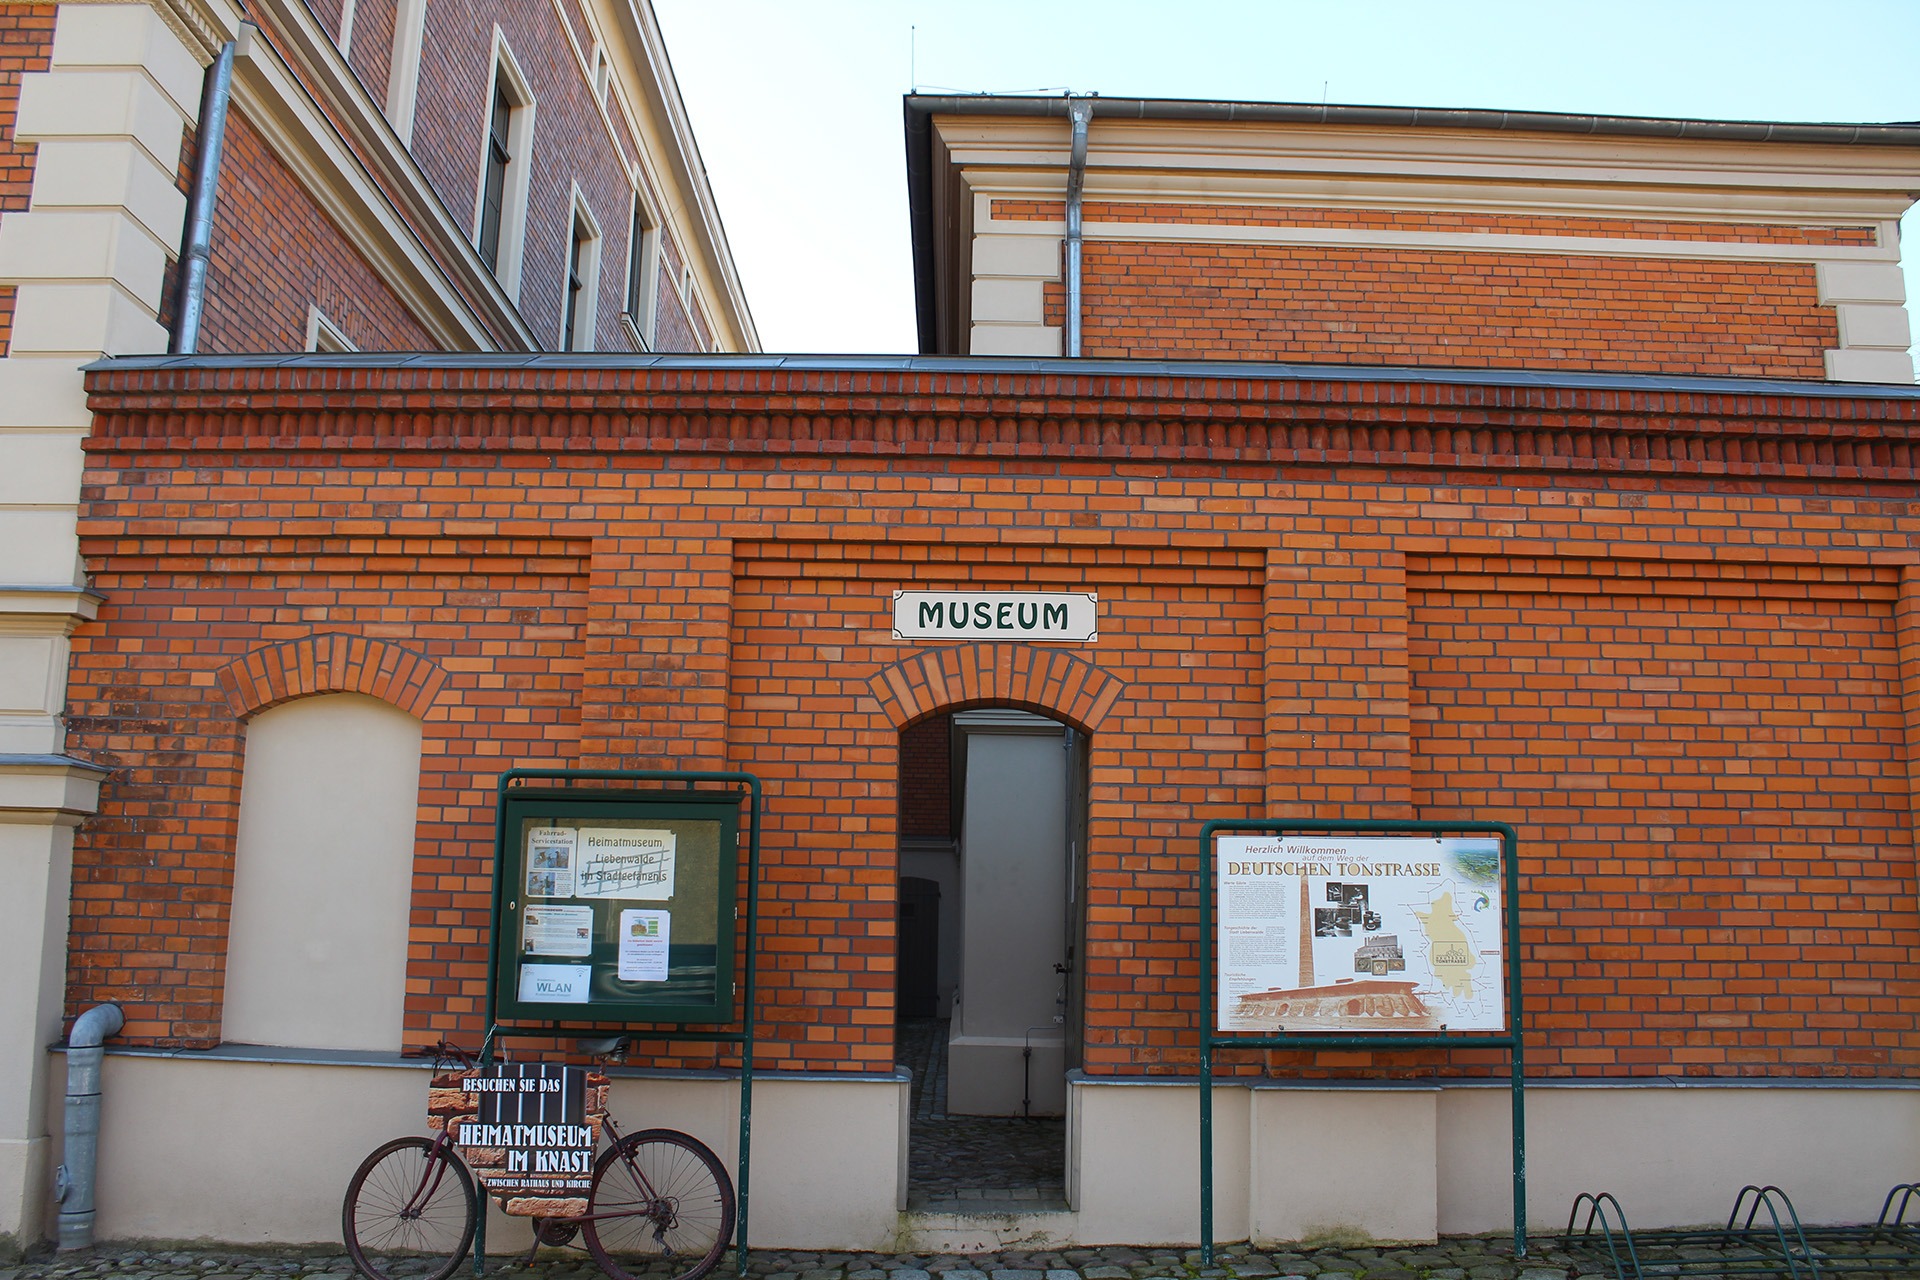 Der Eingang zum Backsteingebäude des Heimatmuseums im Knast, neben der Tür eine Informationskarte und Fahrrad mit dem Museumsnamensschild